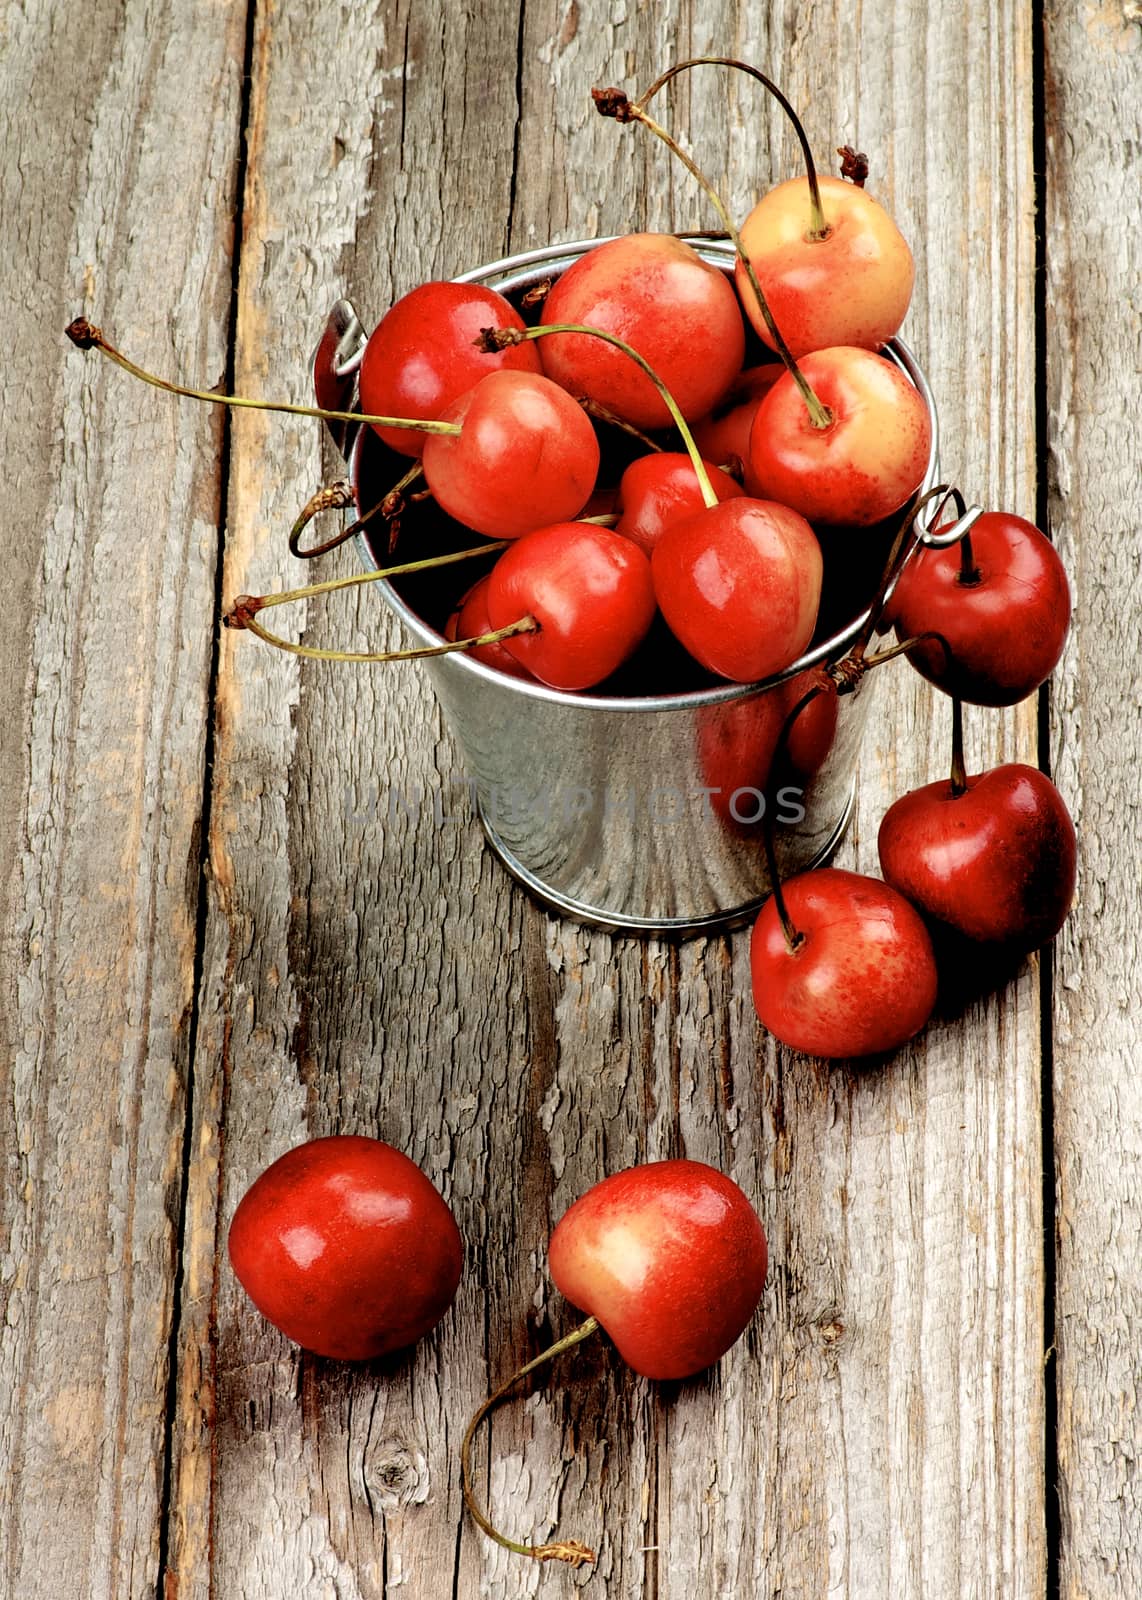 Sweet Maraschino Cherries by zhekos